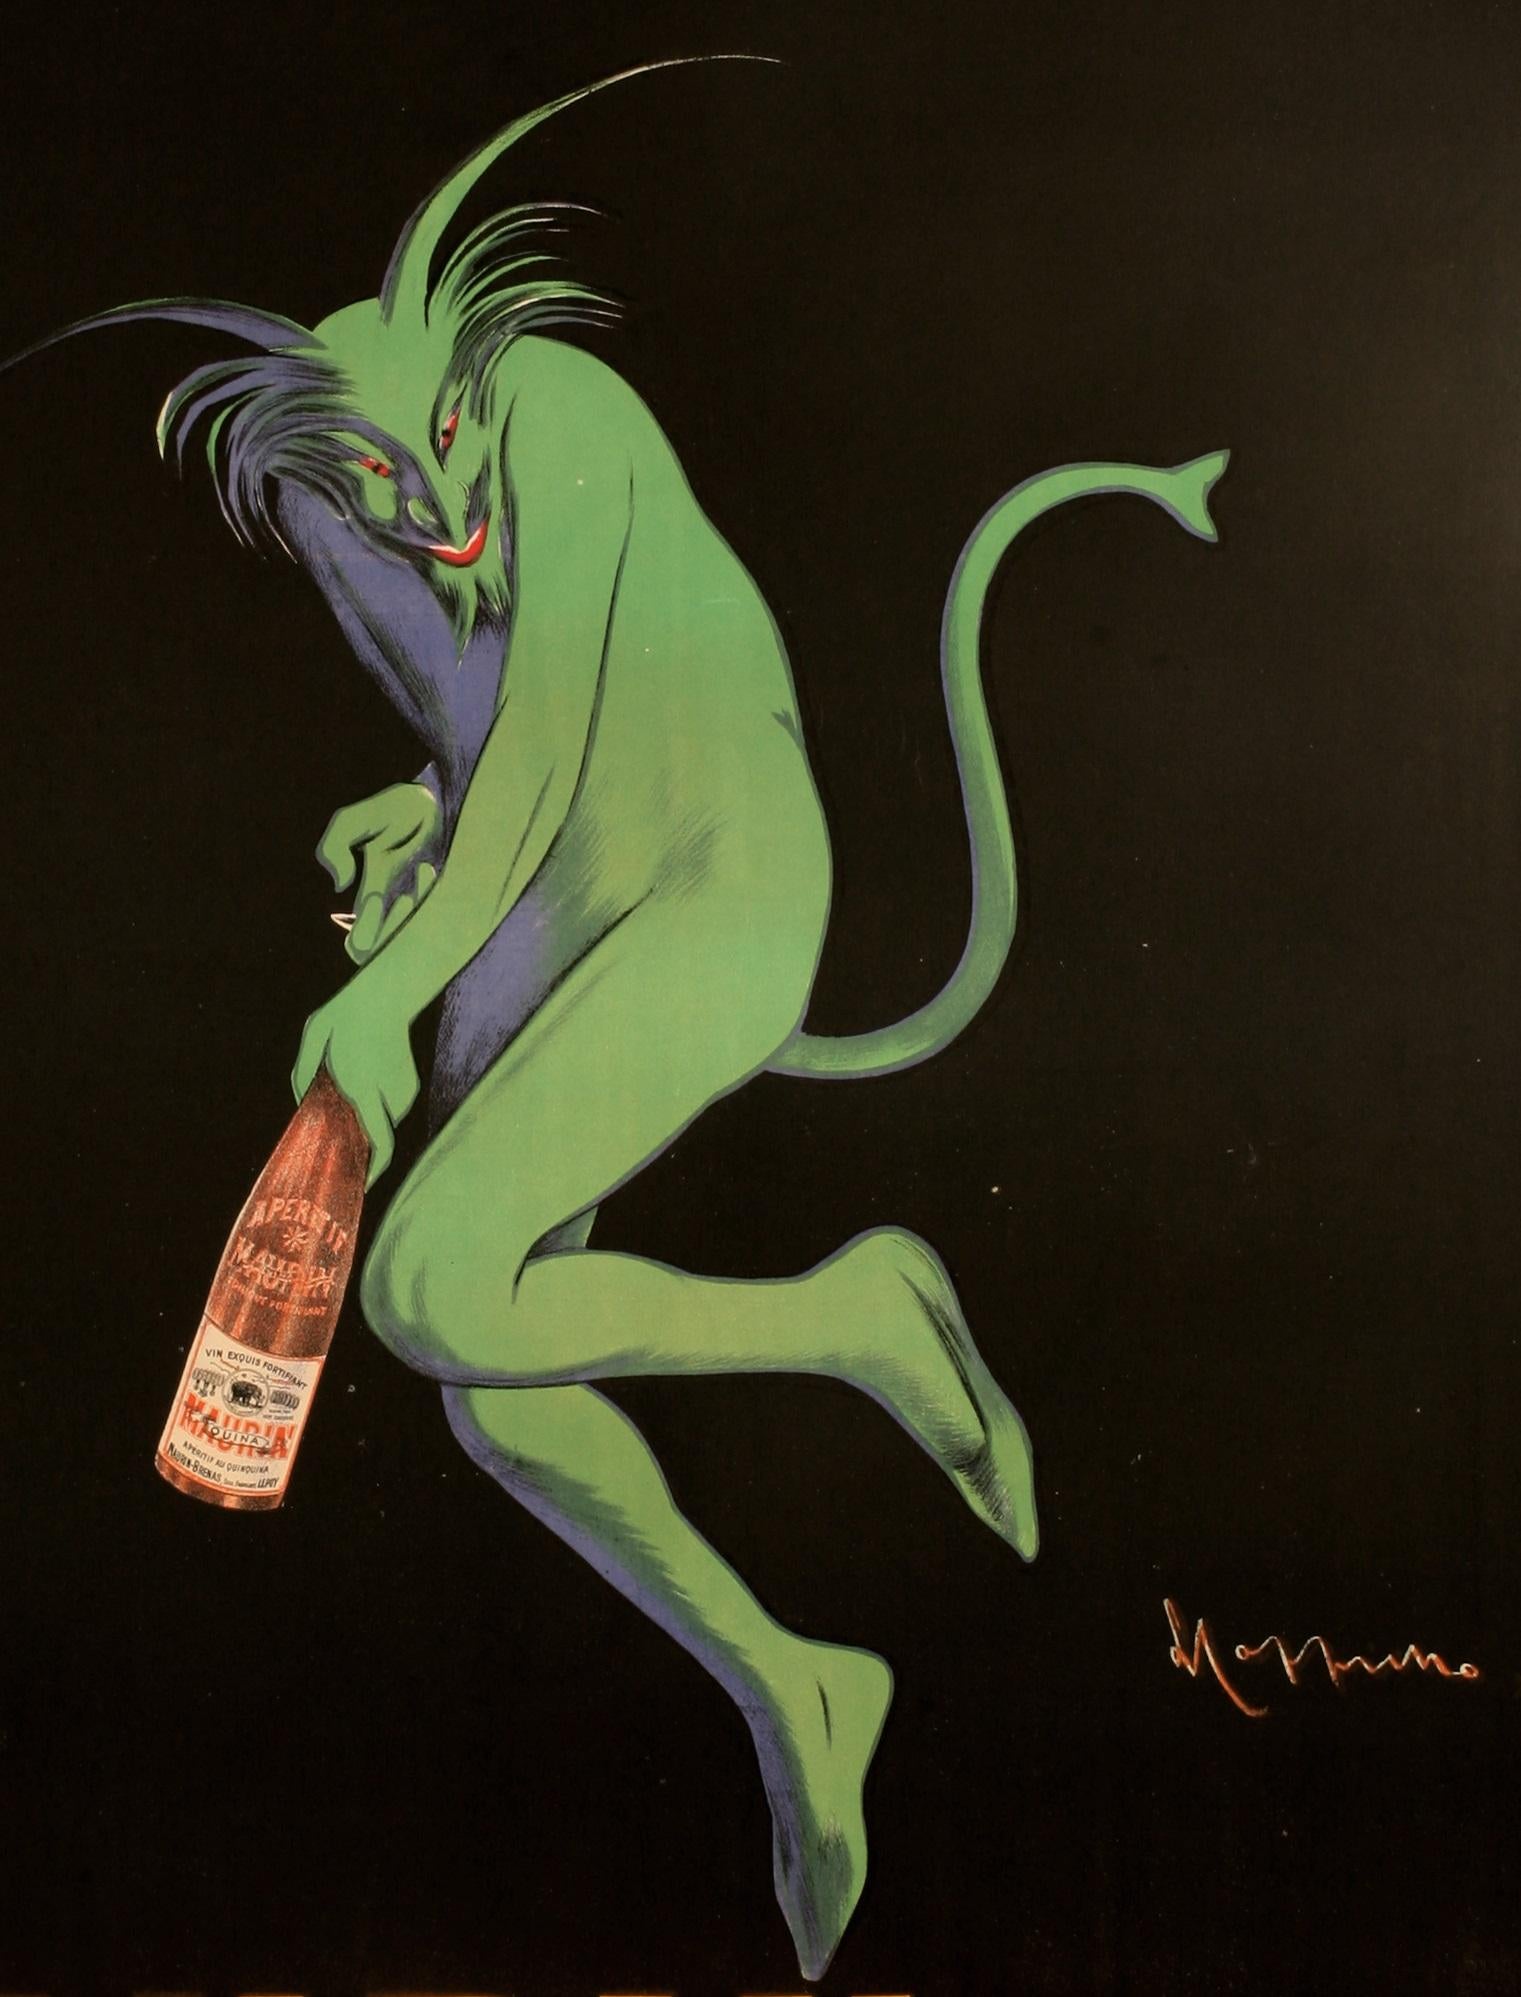 Affiche originale d'alcool vintage pour Maurin Quina datant de 1906 par Leonetto Cappiello.

Artistics : Leonetto Cappiello 
Titre : Maurin Quina - Le Puy - France
Date : 1906 
Taille : 44.9 x 60.6 in / 114 x 154 cm
Imprimeur : Imp. P. Vercasson &